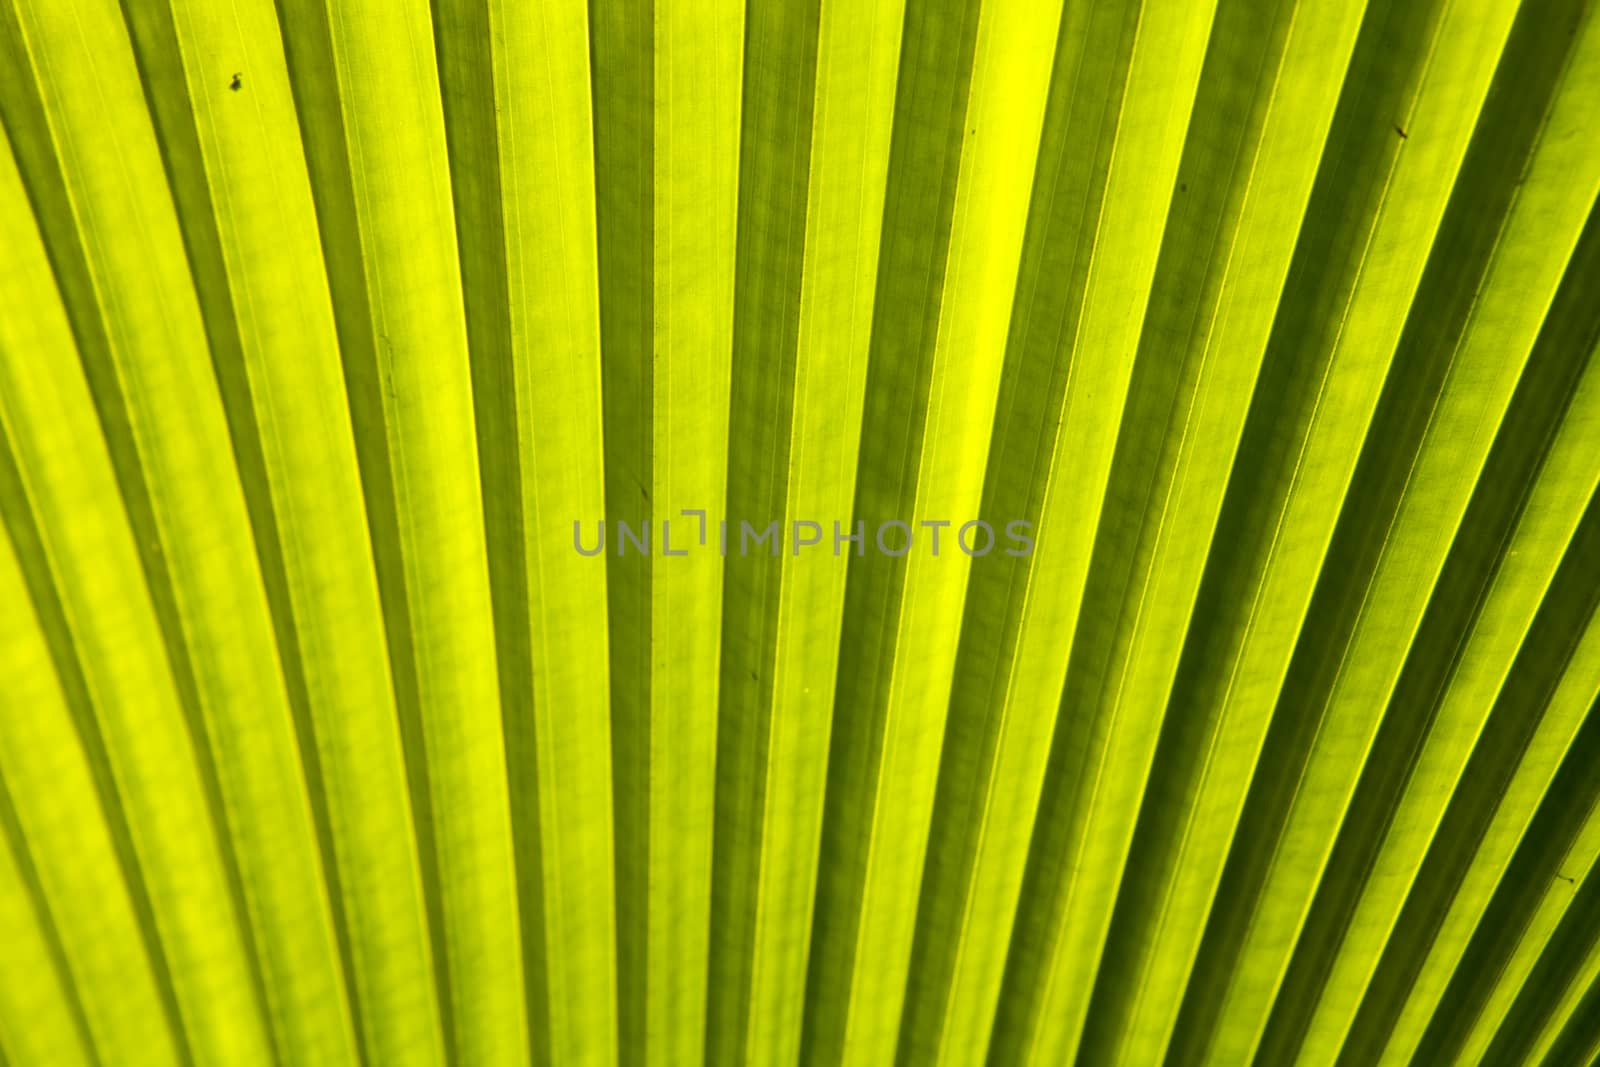 Palm Leaf by Chattranusorn09